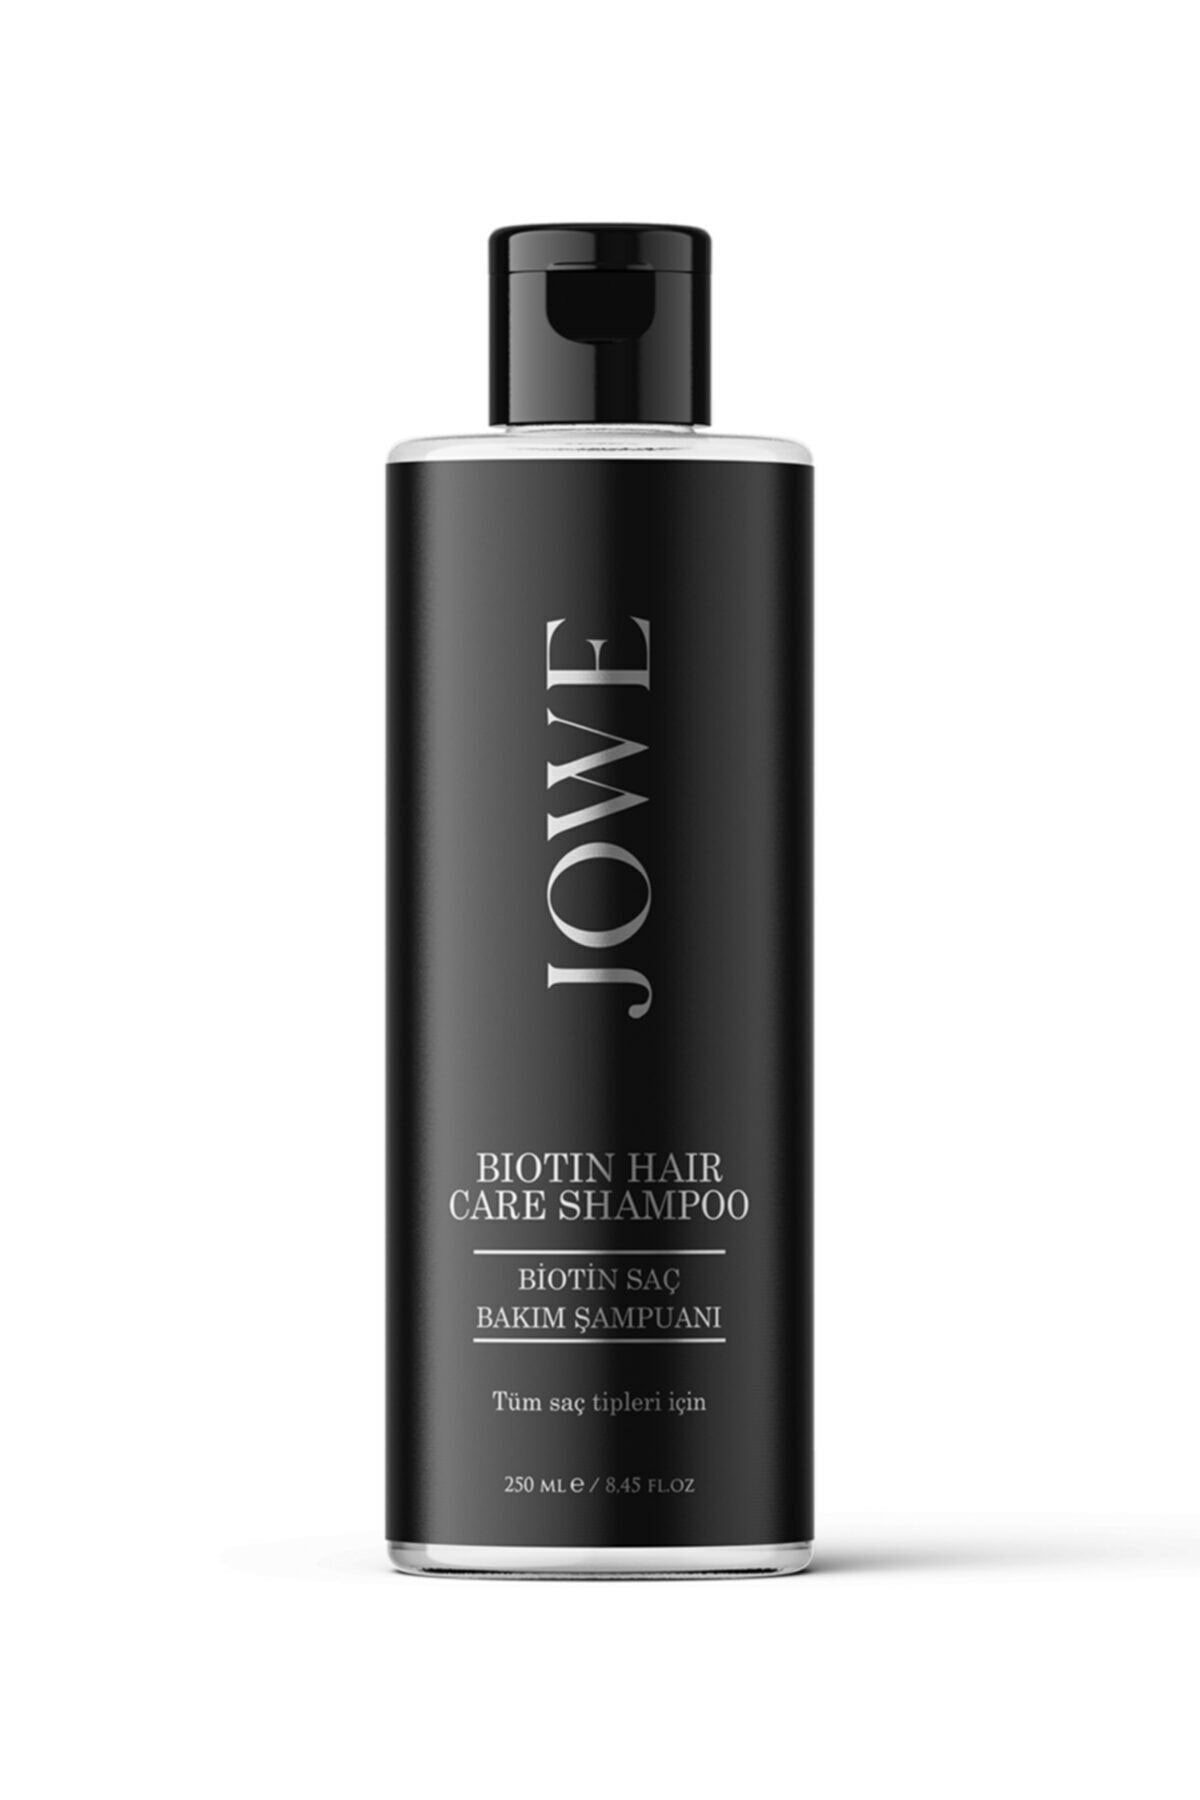 JOWE - Biotin Hair Care Shampoo